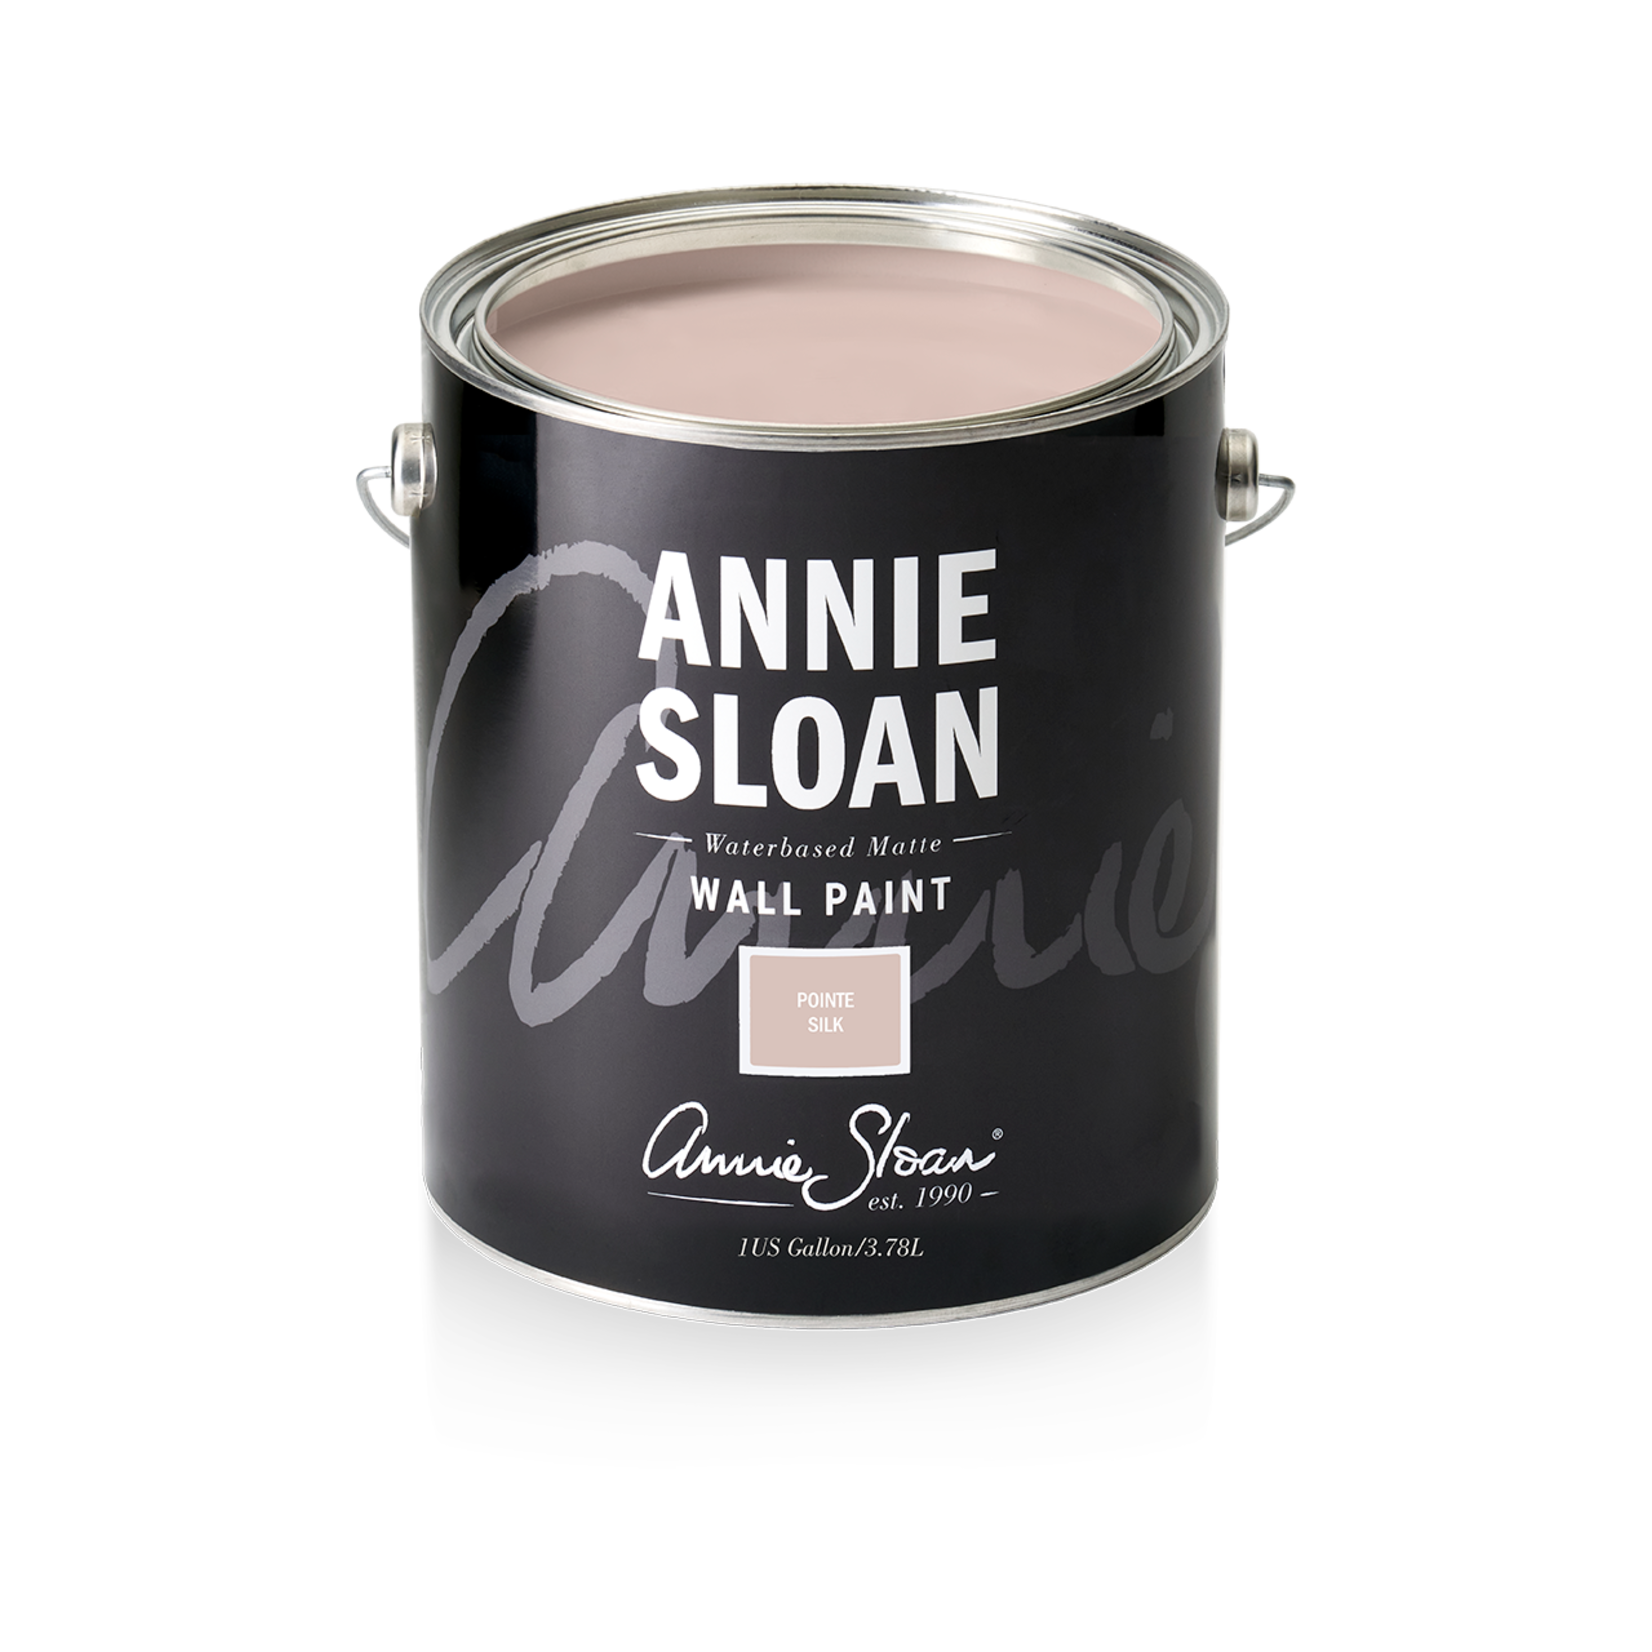 Annie Sloan Annie Sloan Wall Paint 1 Gallon Pointe Silk